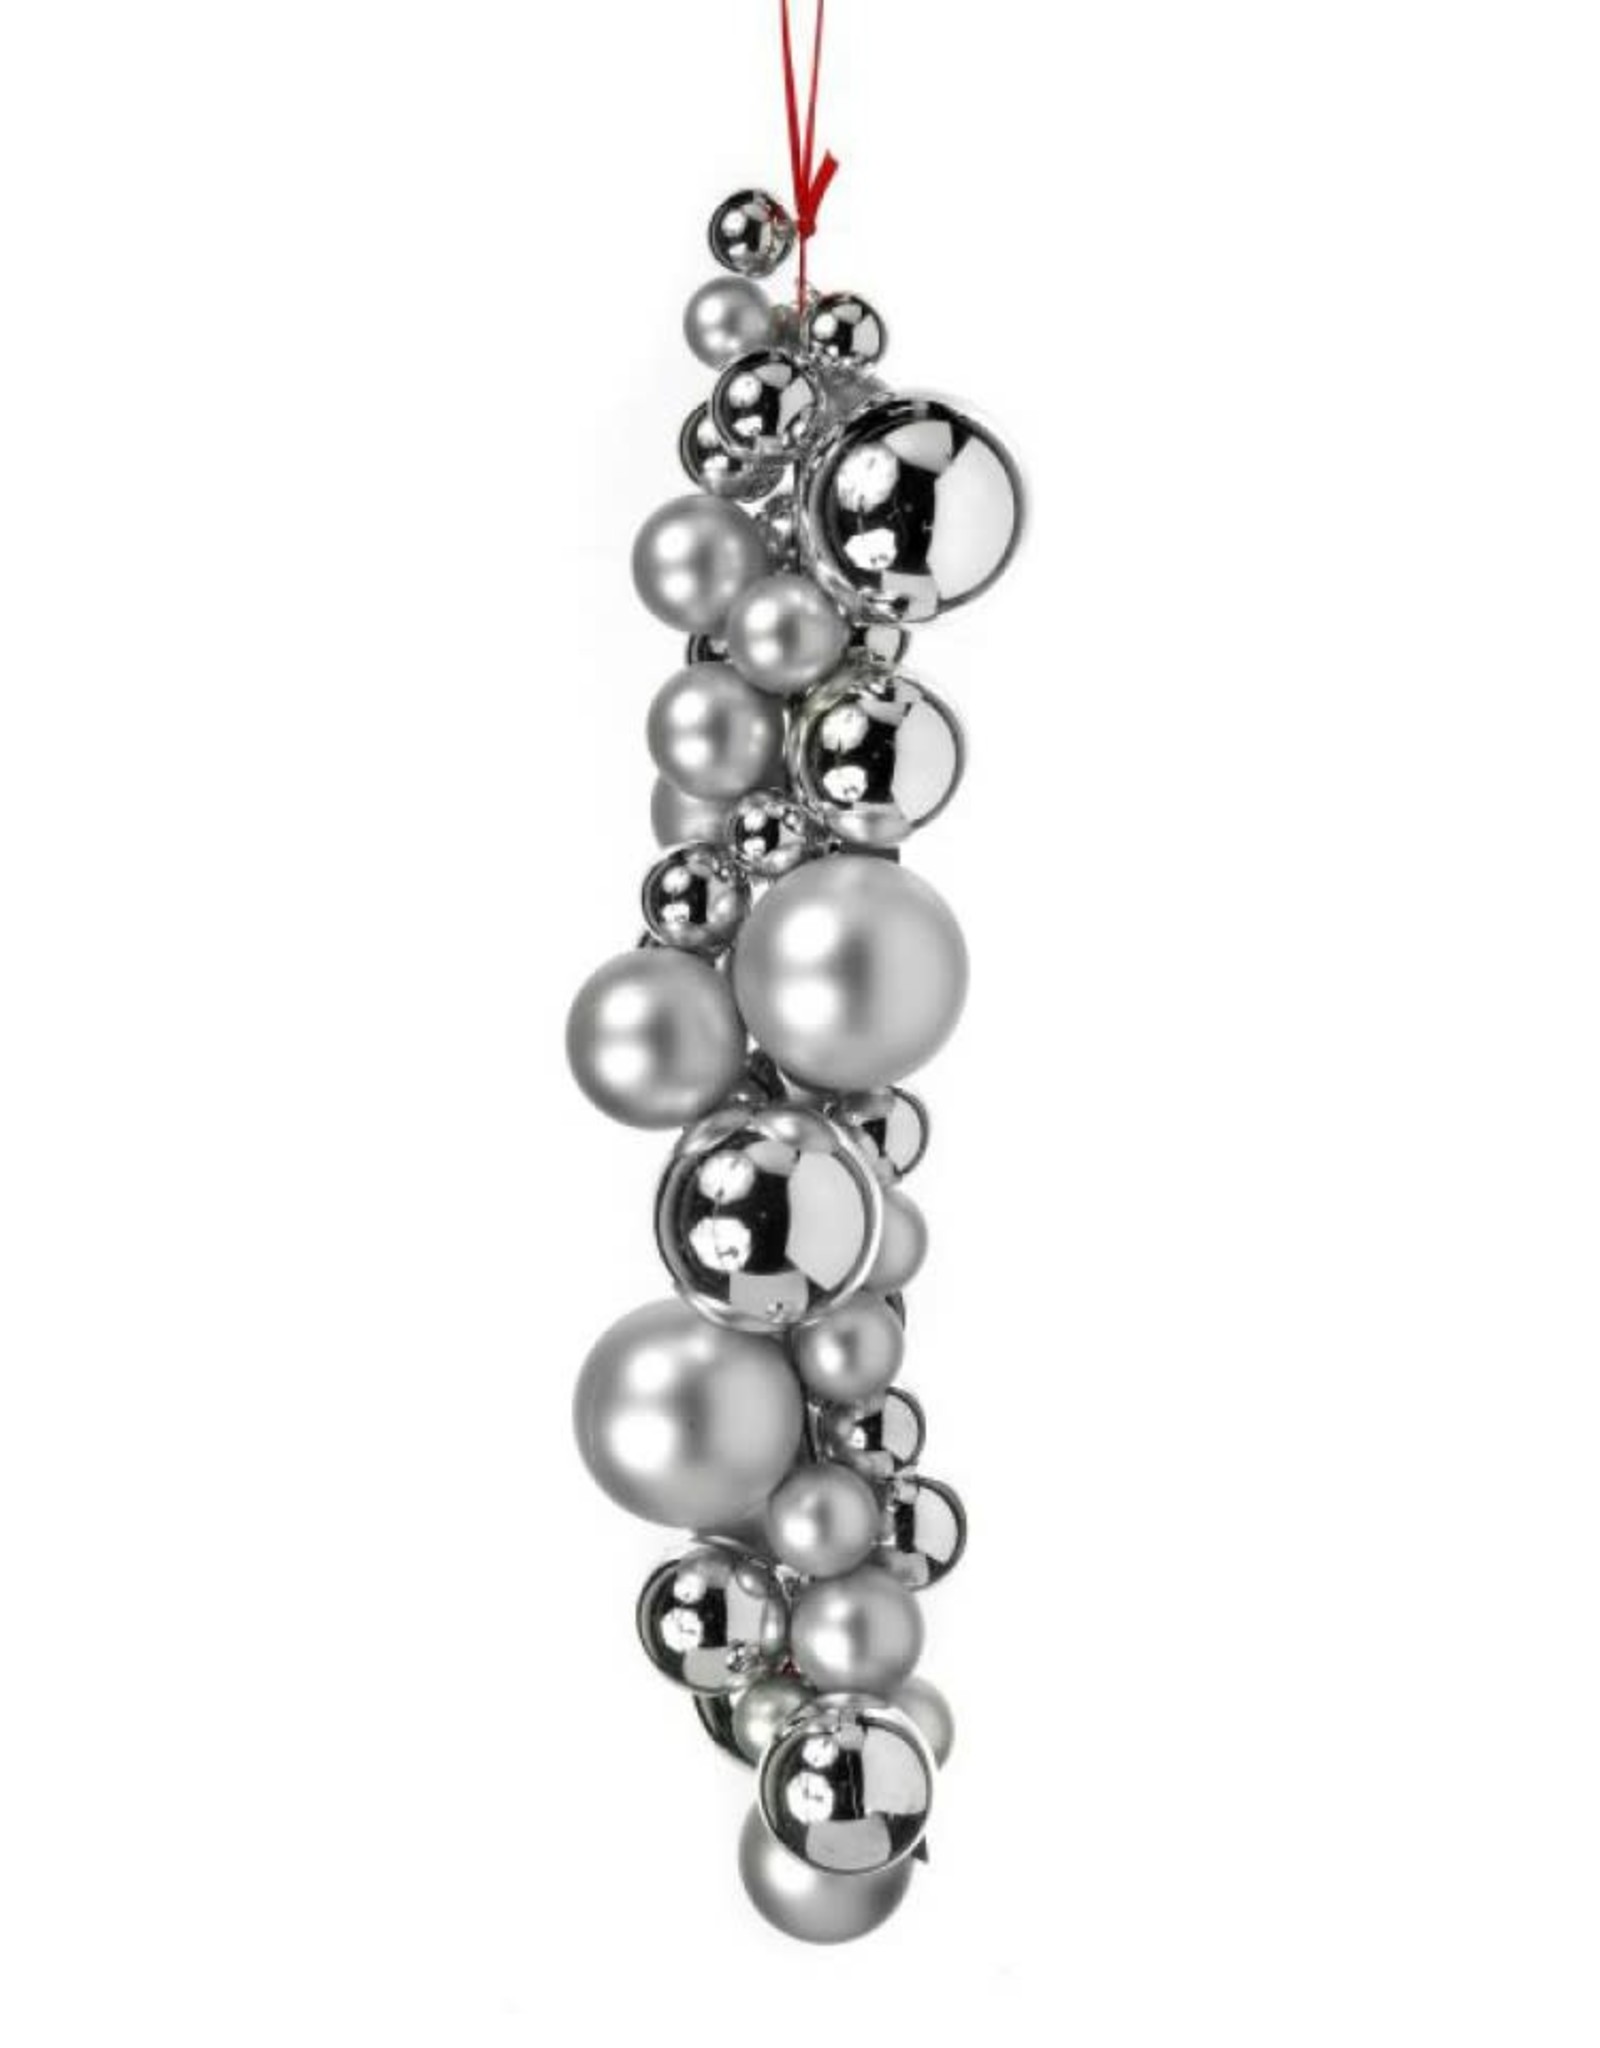 Silver Drop Ornament